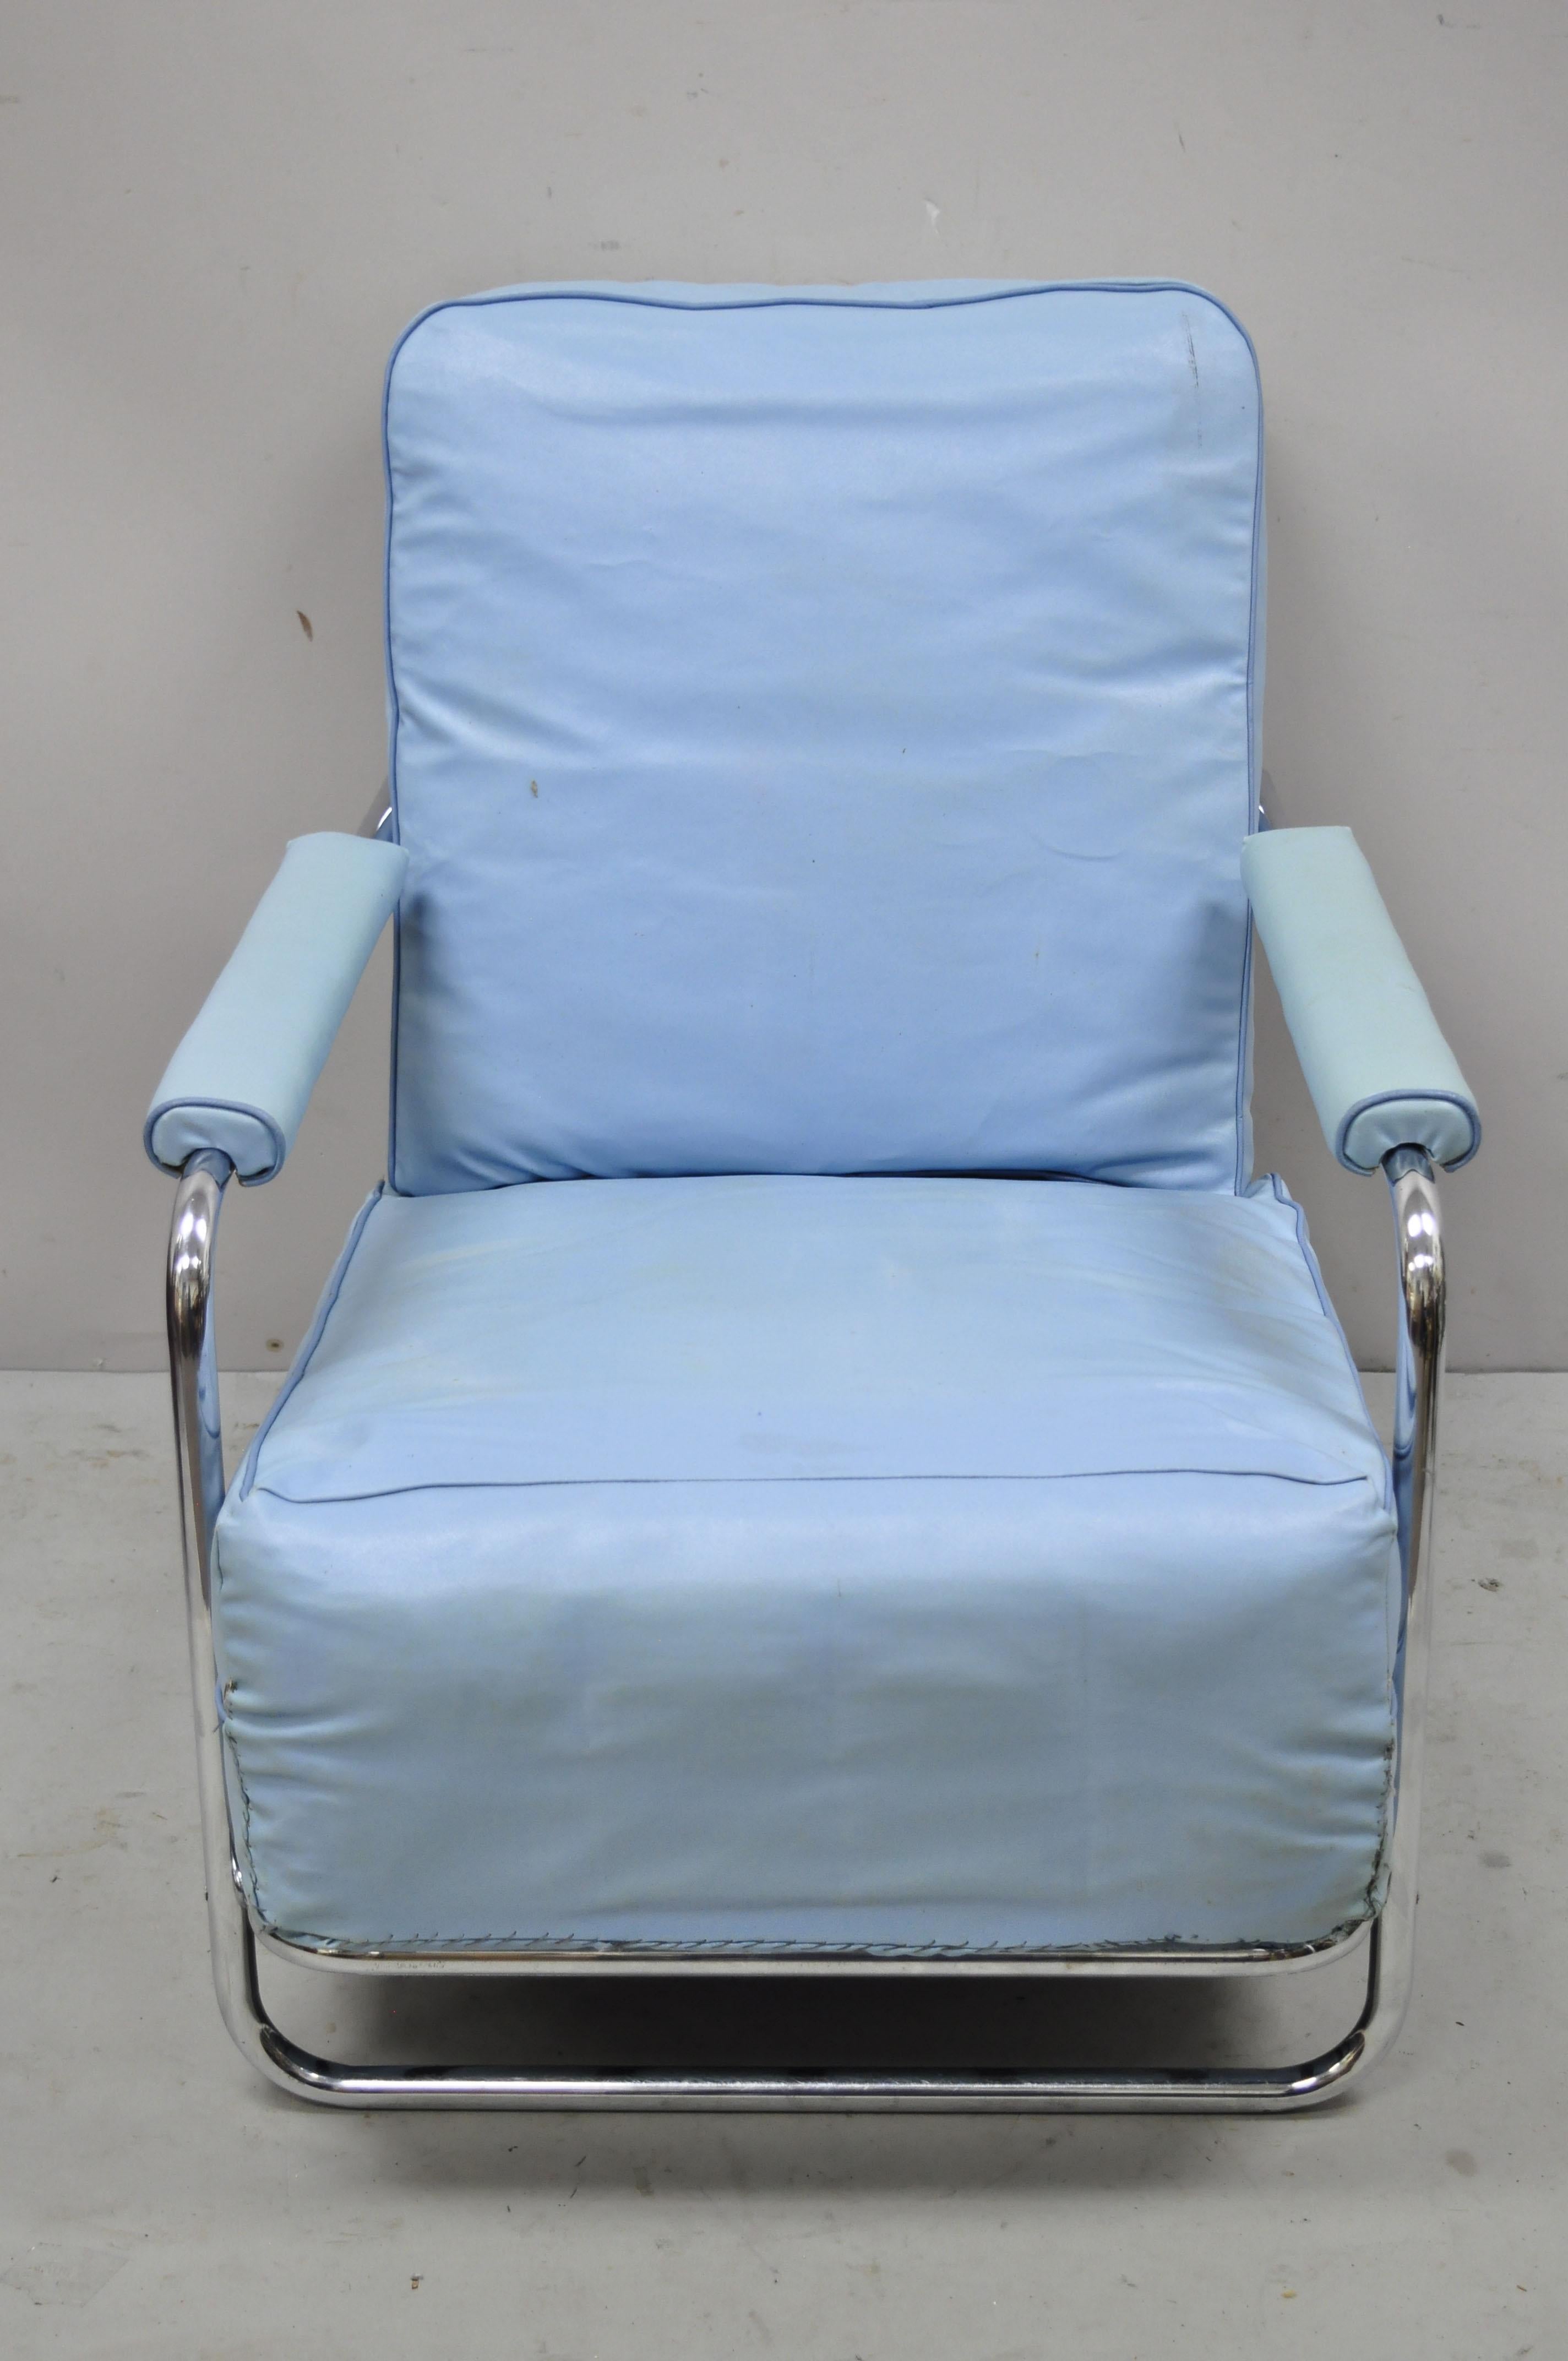 1934 Gilbert Rohde for troy sunshade Art Deco easy chair blue lounge chair. L'article présente un cadre en métal chromé, des accoudoirs rembourrés, un très bel article ancien, un artisanat américain de qualité, un style et une forme remarquables.